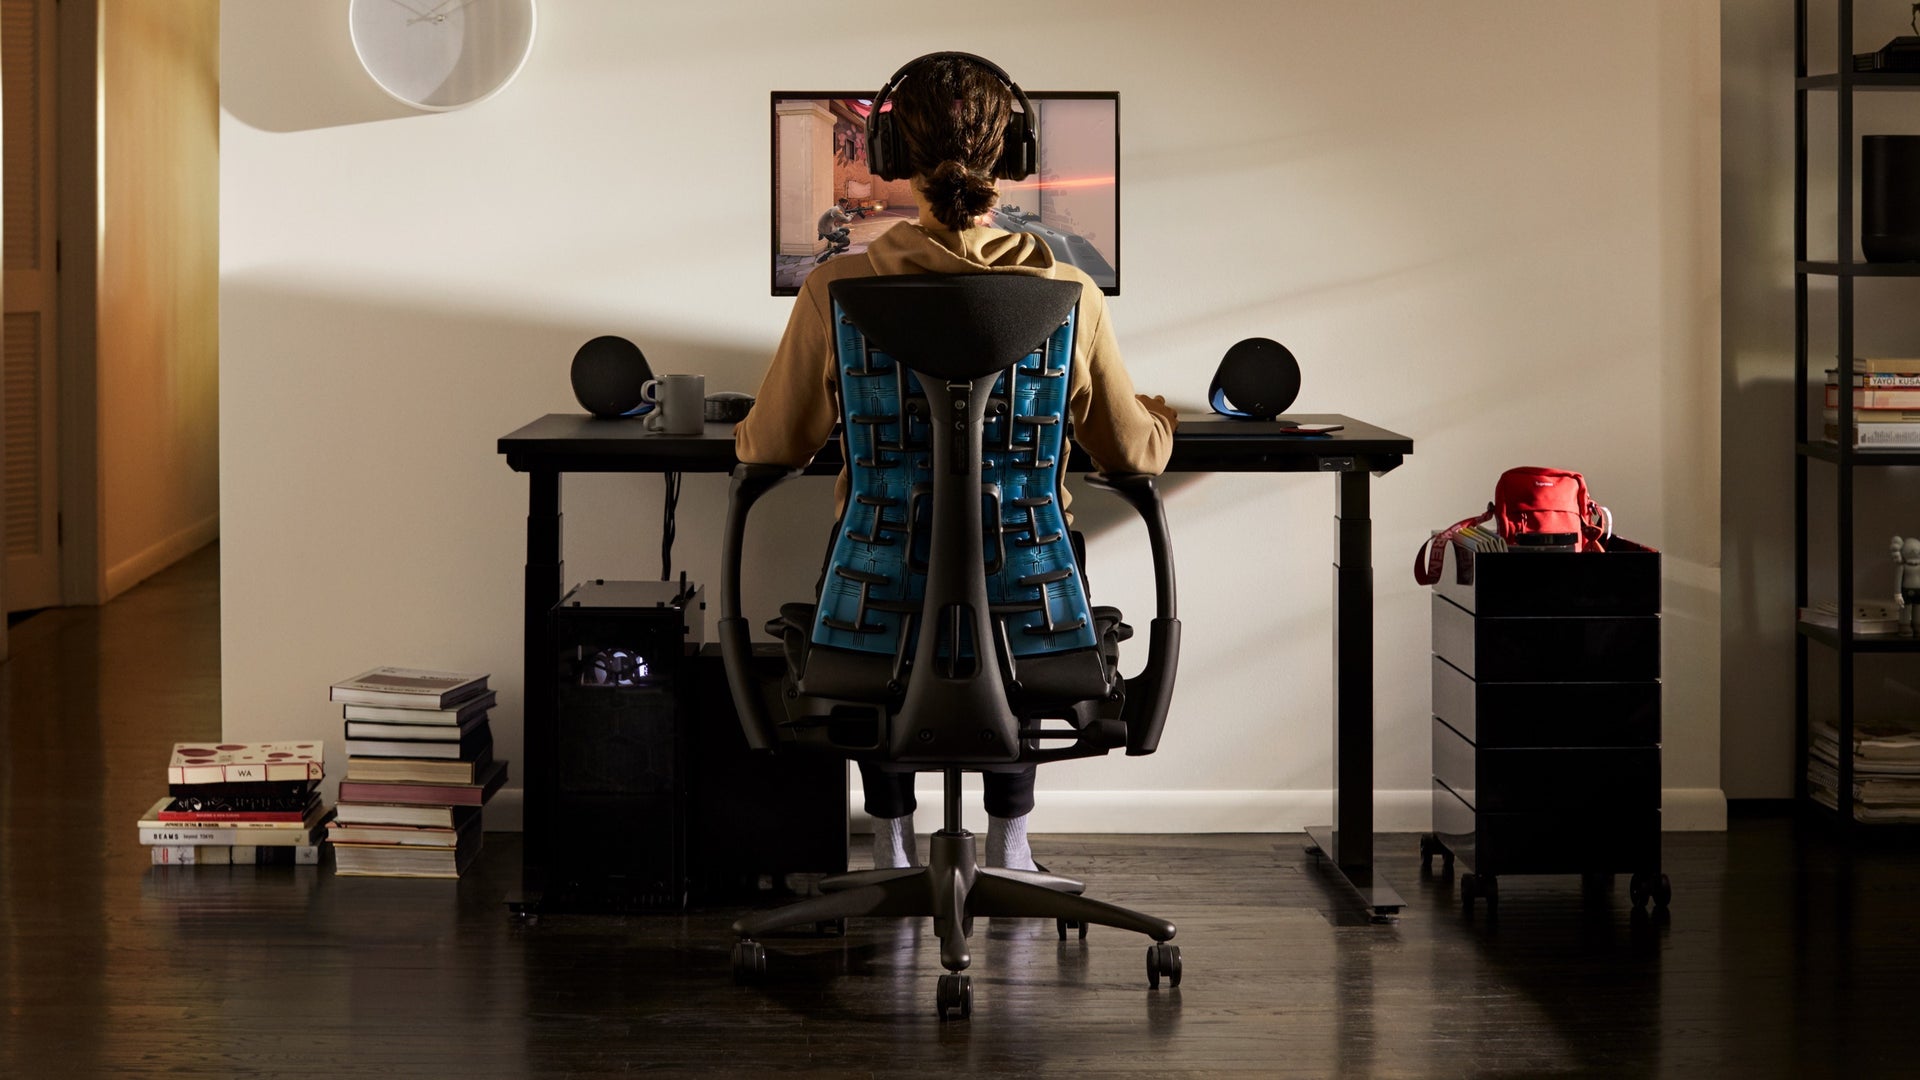 Personne installée dans un fauteuil de jeu Embody, les yeux rivés sur un écran fixé au support d'écran Ollin monté sur la surface du bureau de jeu, le tout dans un environnement domestique.